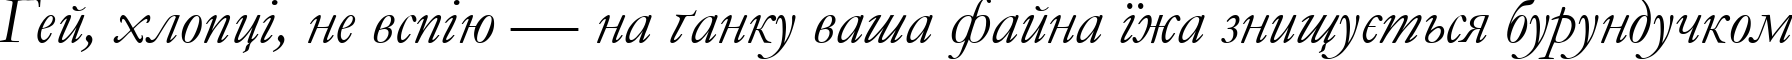 Пример написания шрифтом font254 текста на украинском